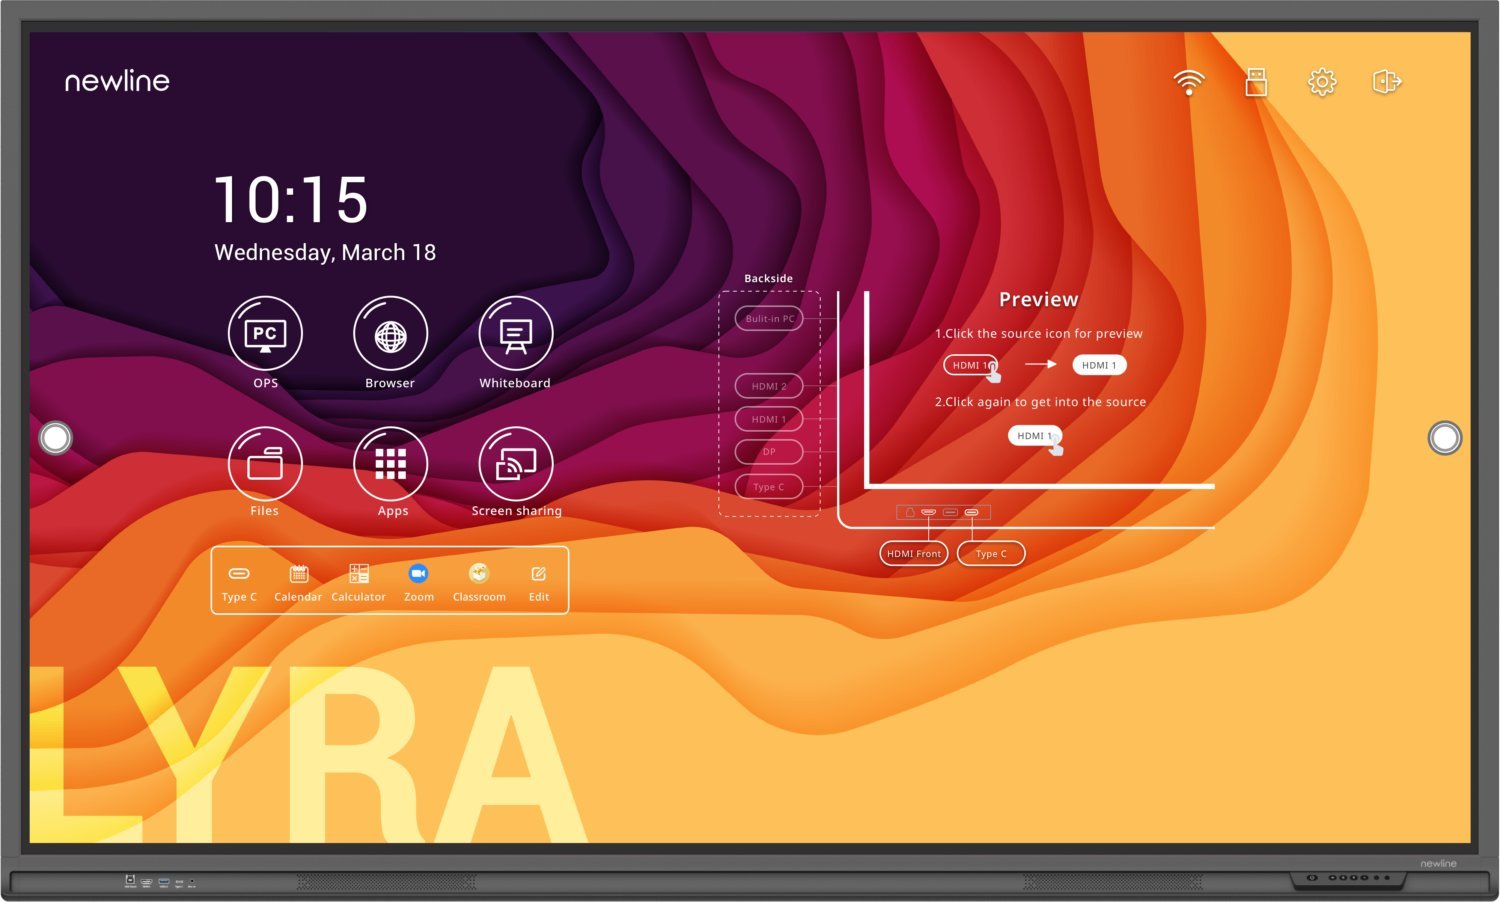 Zdjęcia - Tablica interaktywna Newline System interaktywny   Lyra tablica interkatywna 190,5 cm (75 